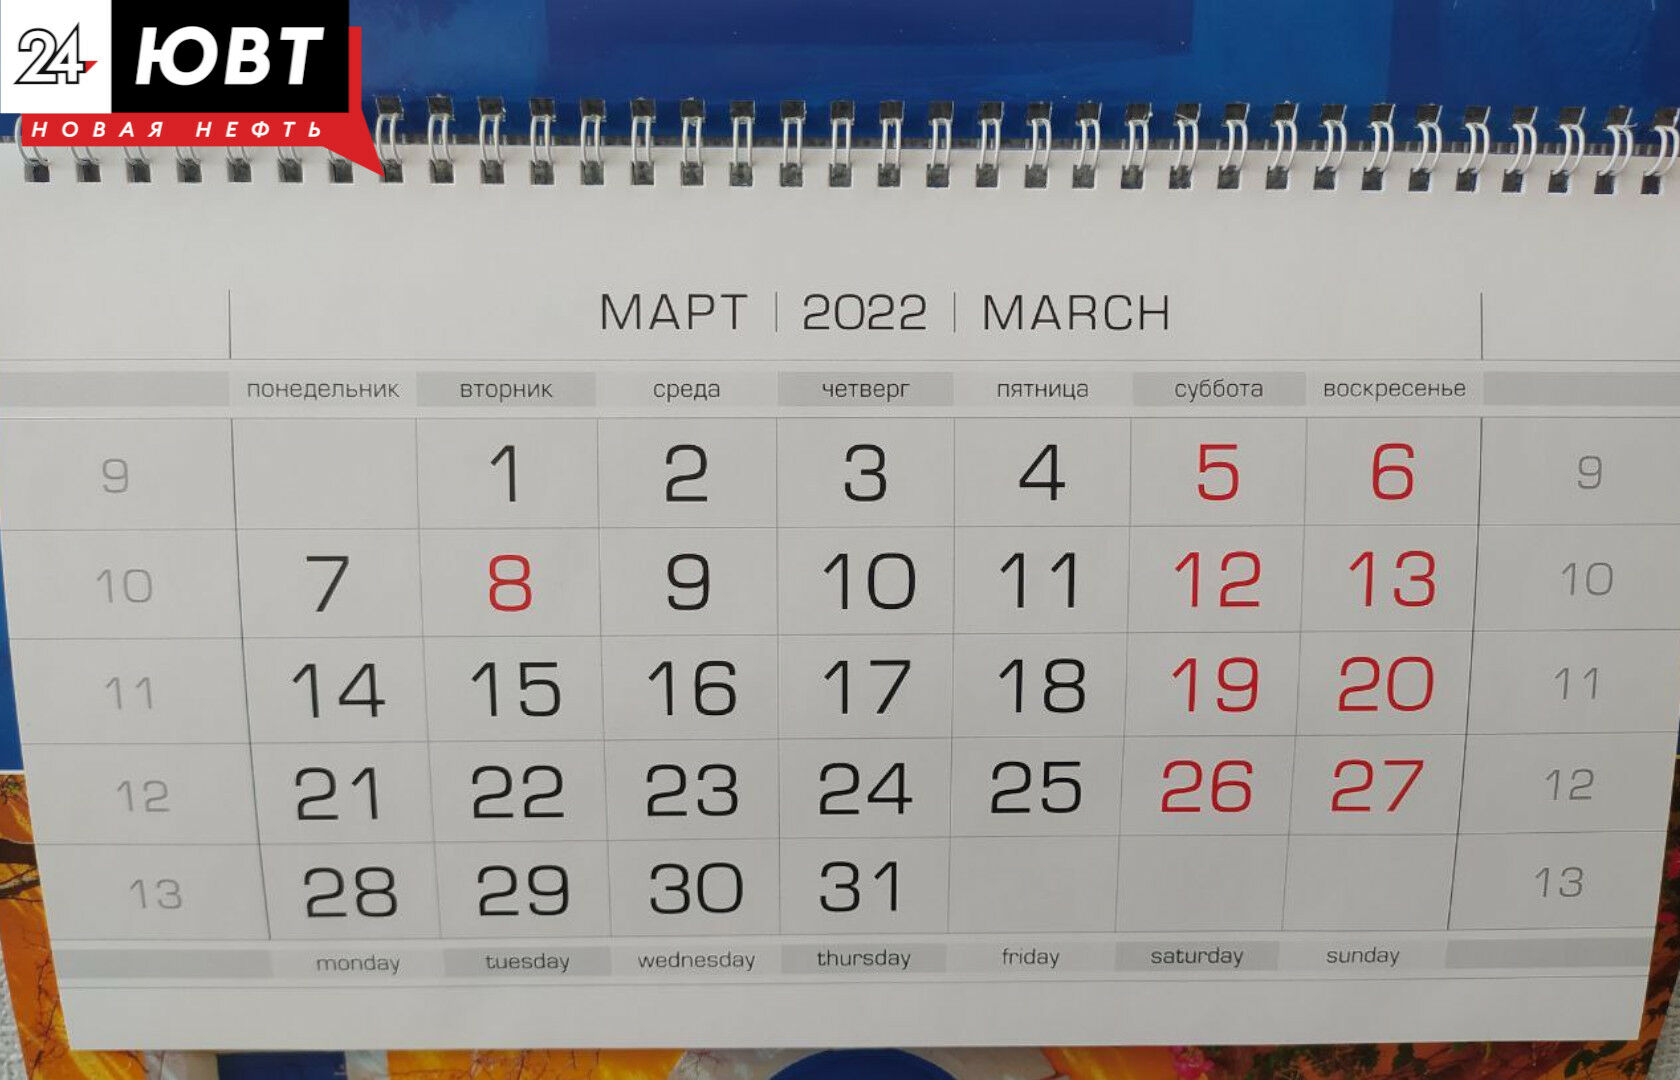 6 апреля 2024 рабочий день. Выходные дни в Татарстане 2022. Мартовские праздники 2022. Выходные дни в марте 2022 года в Татарстане. Календарь рабочих и выходных дней.